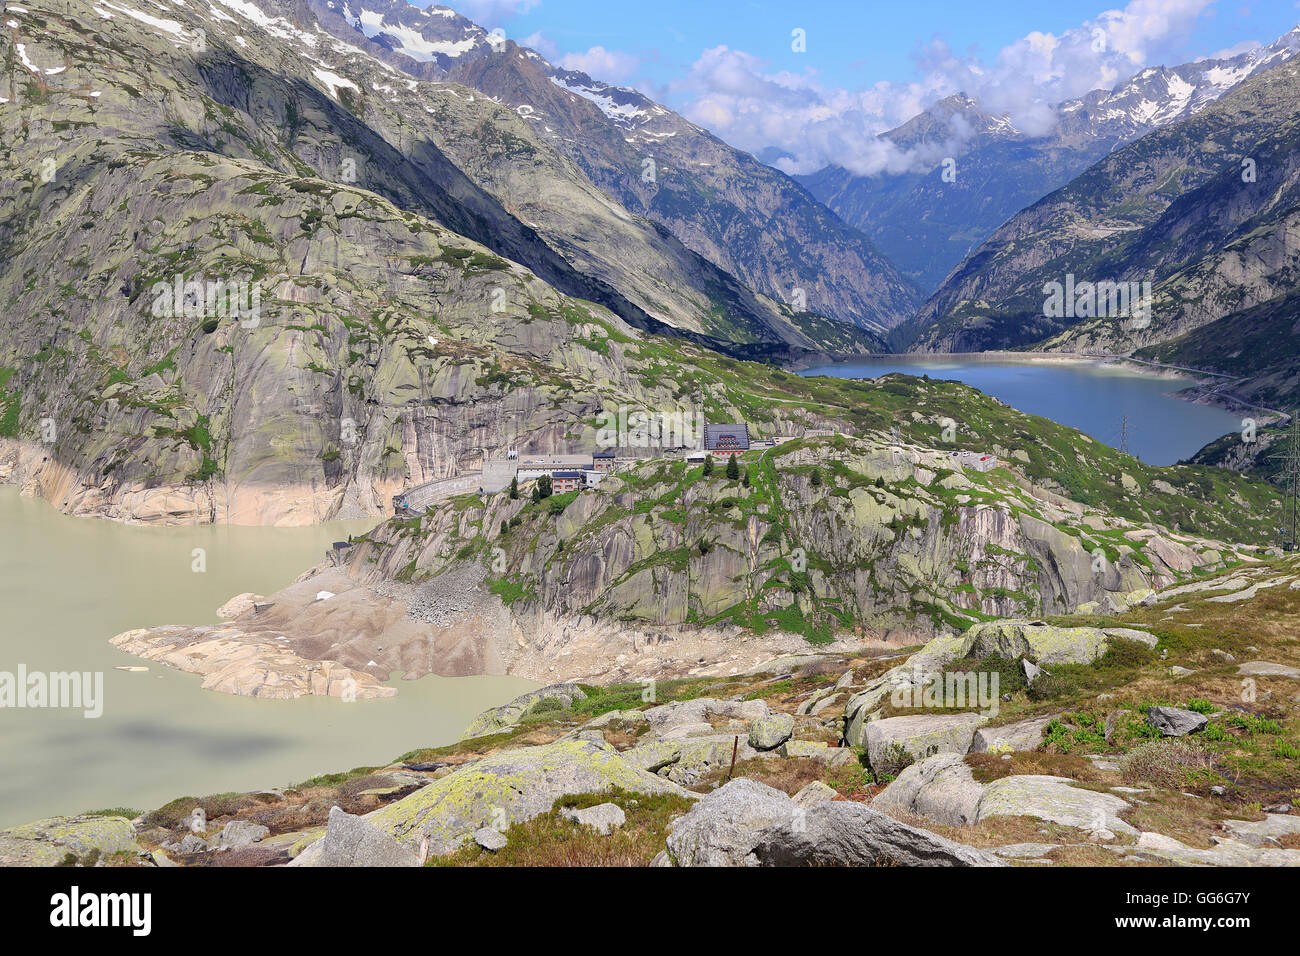 Le col du Grimsel, Alpes, Suisse Banque D'Images